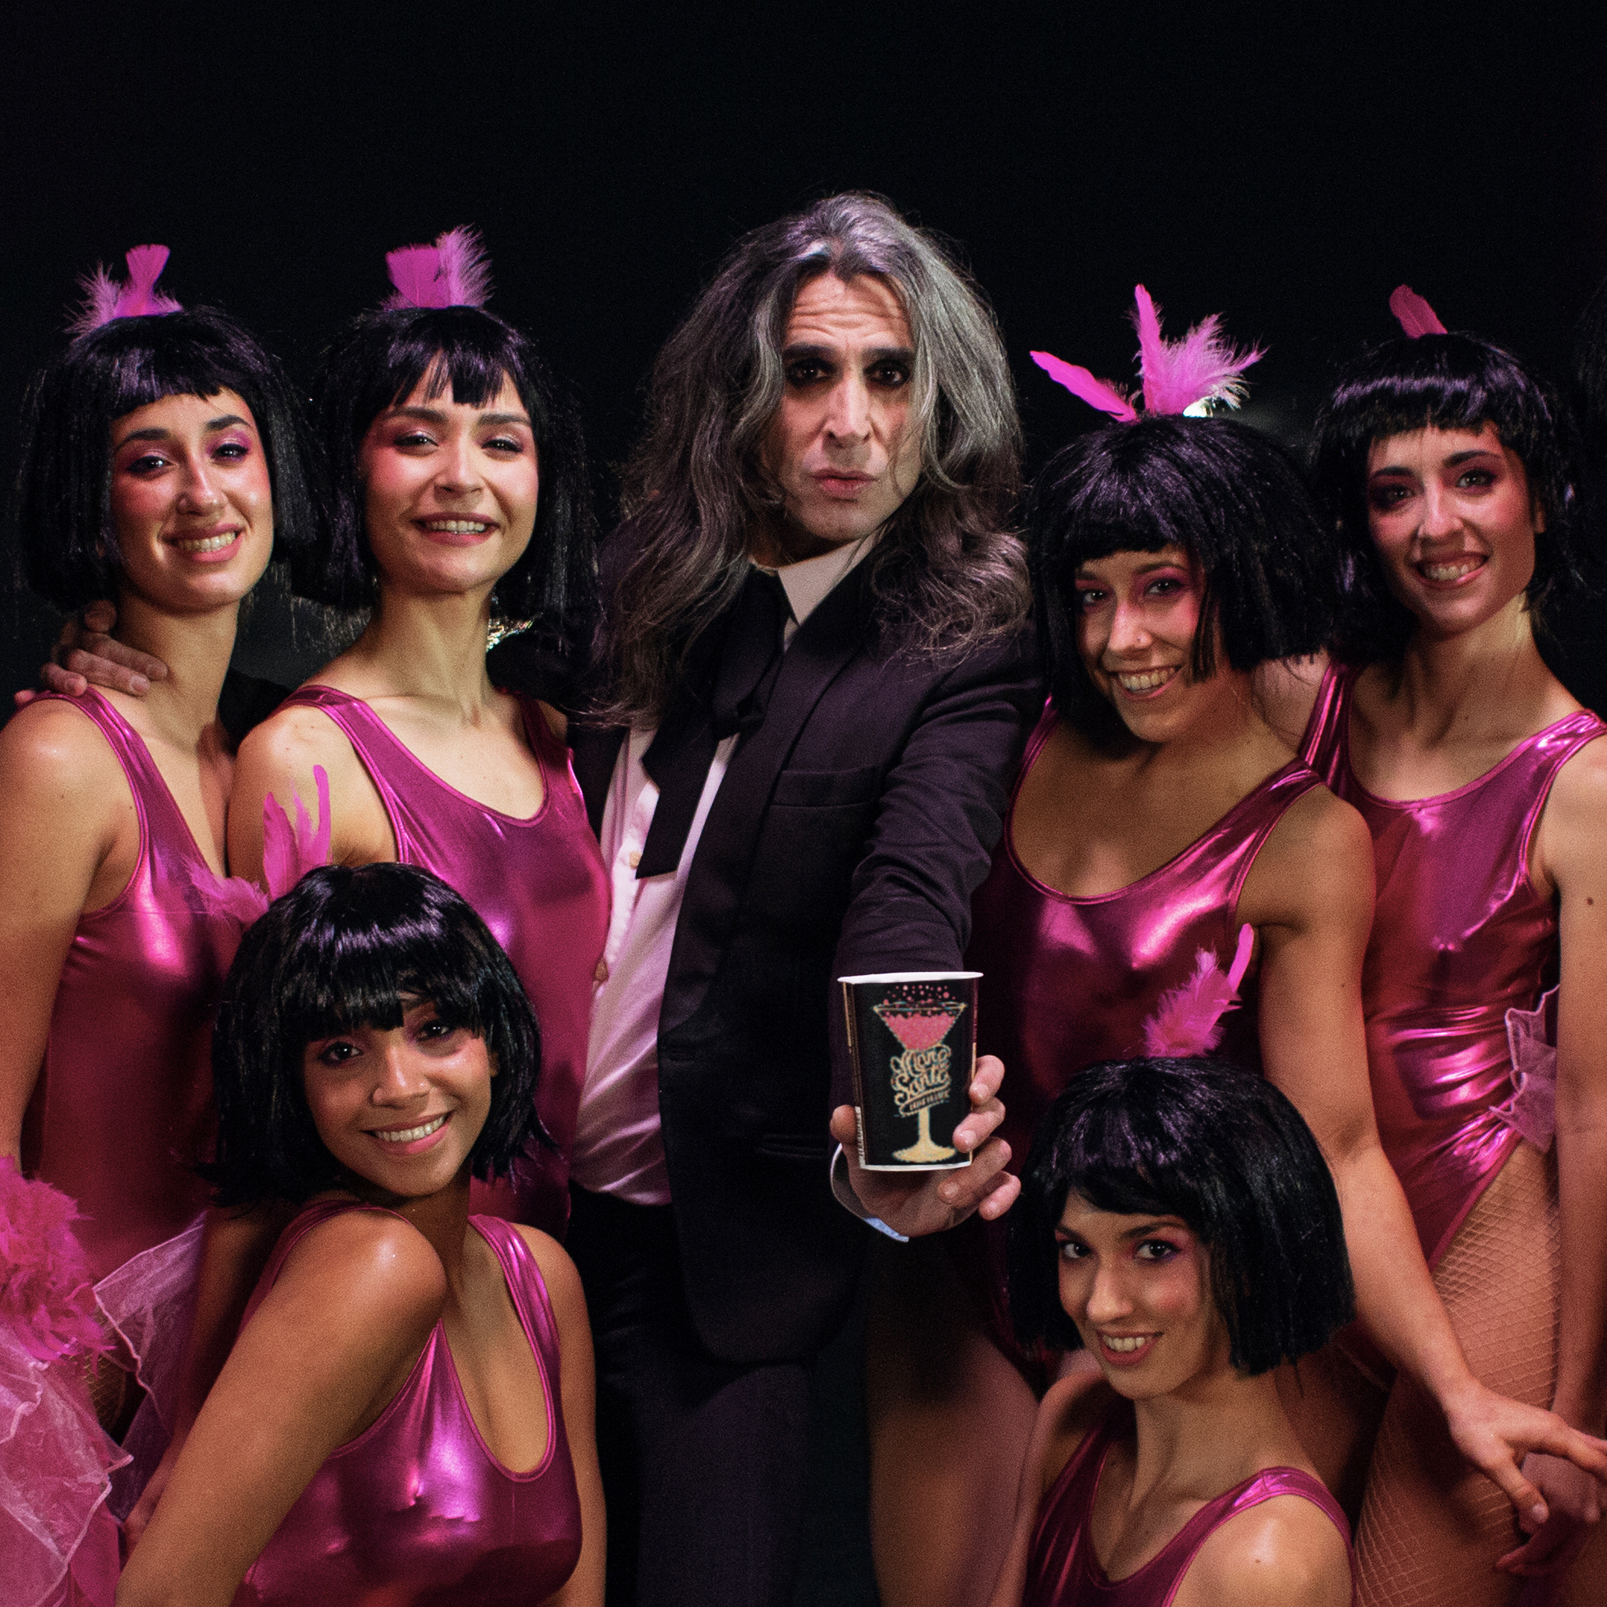 Mario Vaquerizo sostiene un envase de Mano de Santo rodeado por las bailarinas que representan las burbujas del producto.